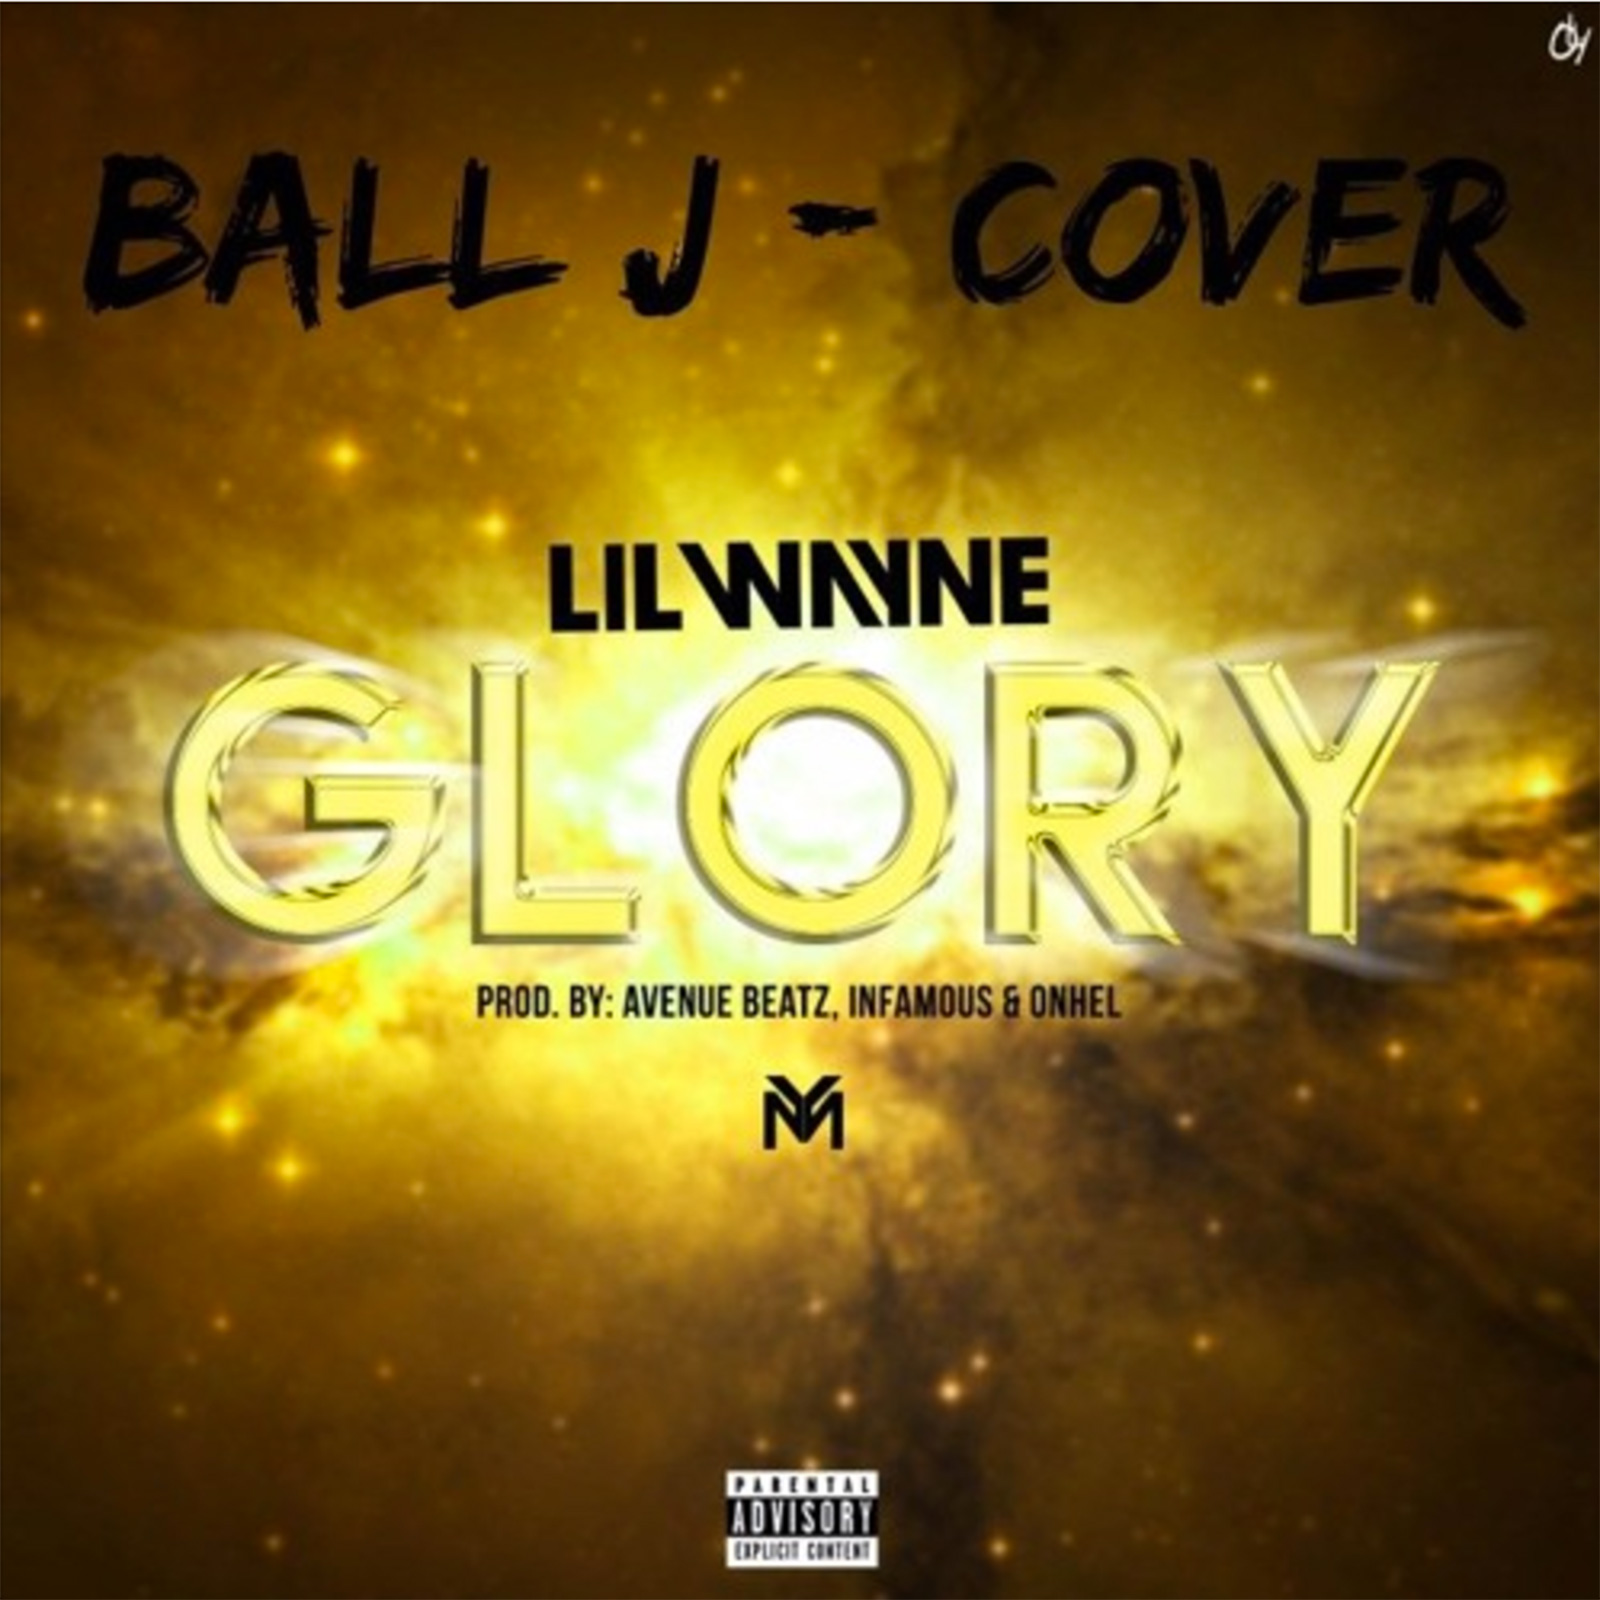 Glory by Ball J feat. Lil Wayne